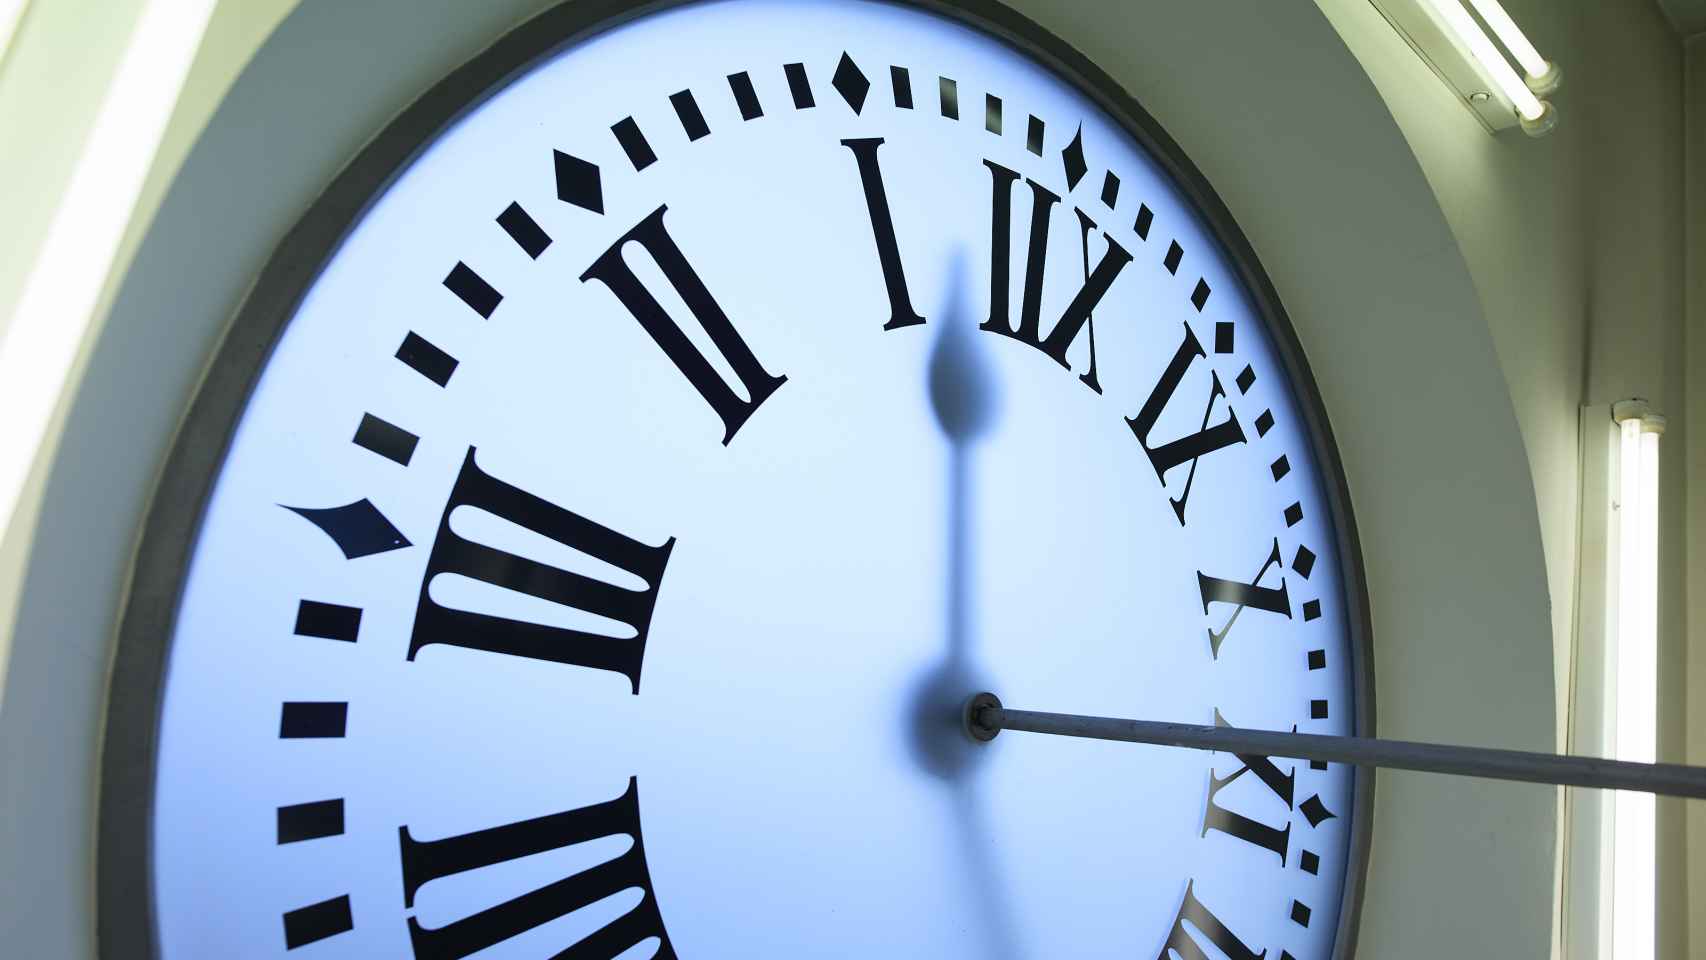 Imagen del reloj de la Puerta del Sol de Madrid en relación a la 'campanada' dada por Kia en 2020.